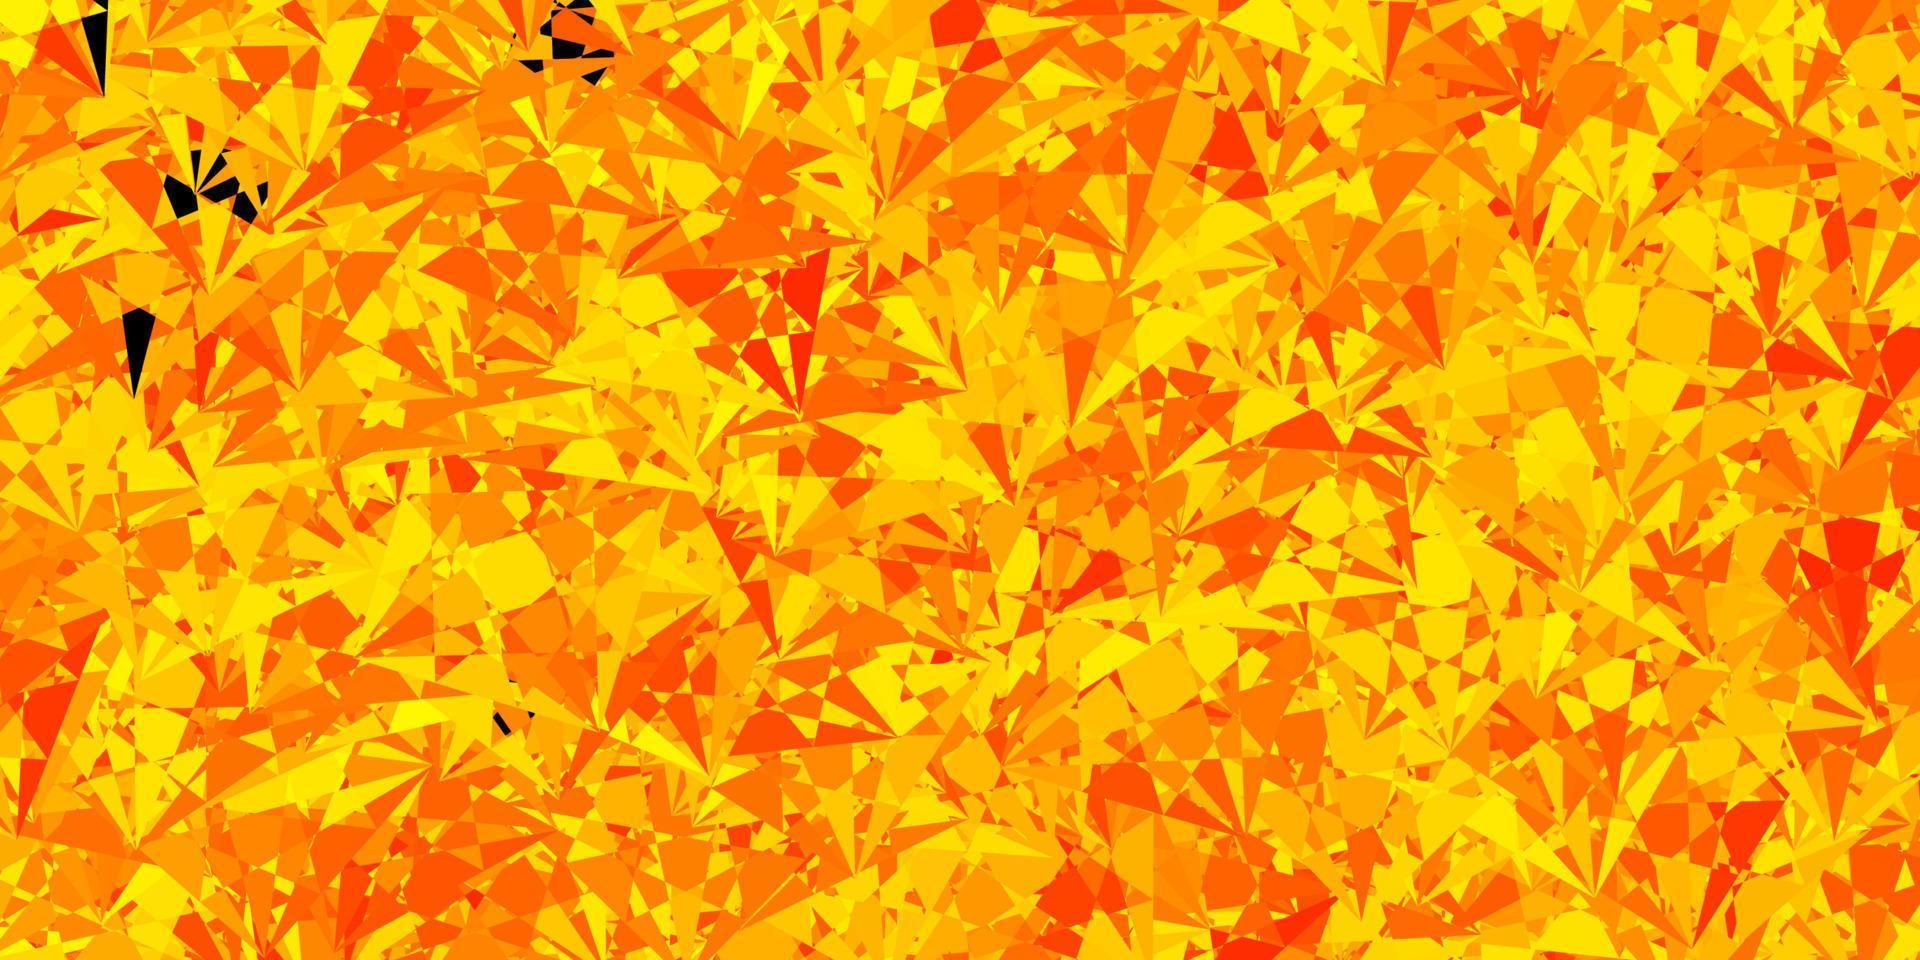 textura de vector amarillo oscuro con triángulos al azar.